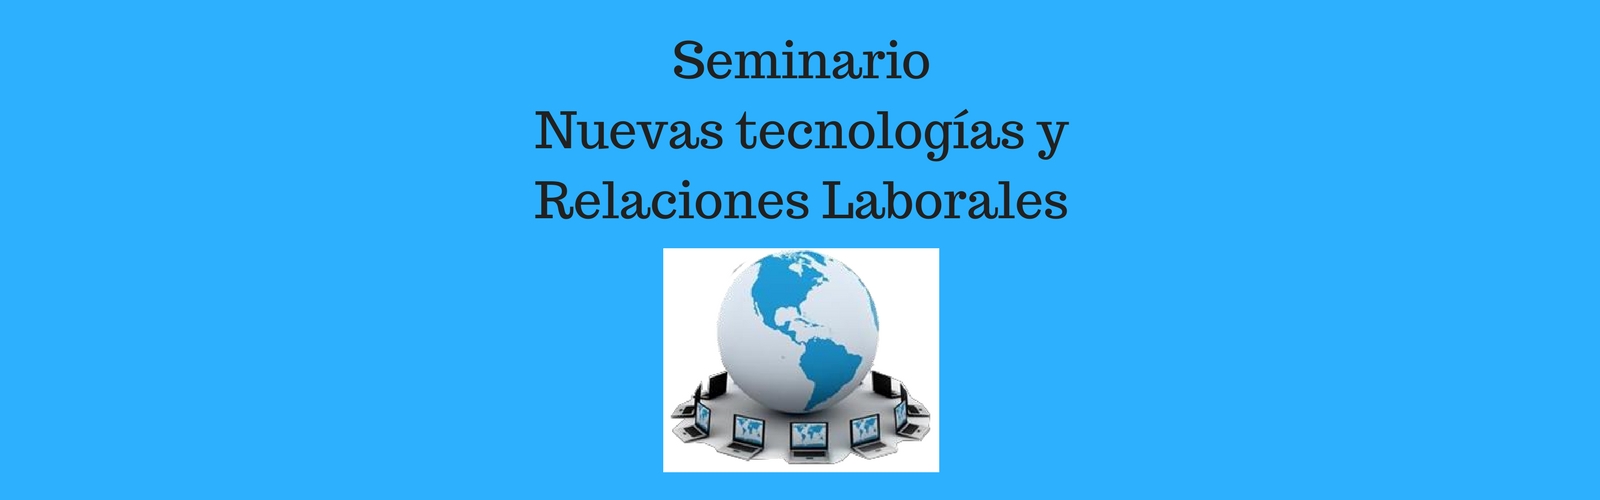 Seminario "Nuevas Tecnologías y Relaciones Laborales"